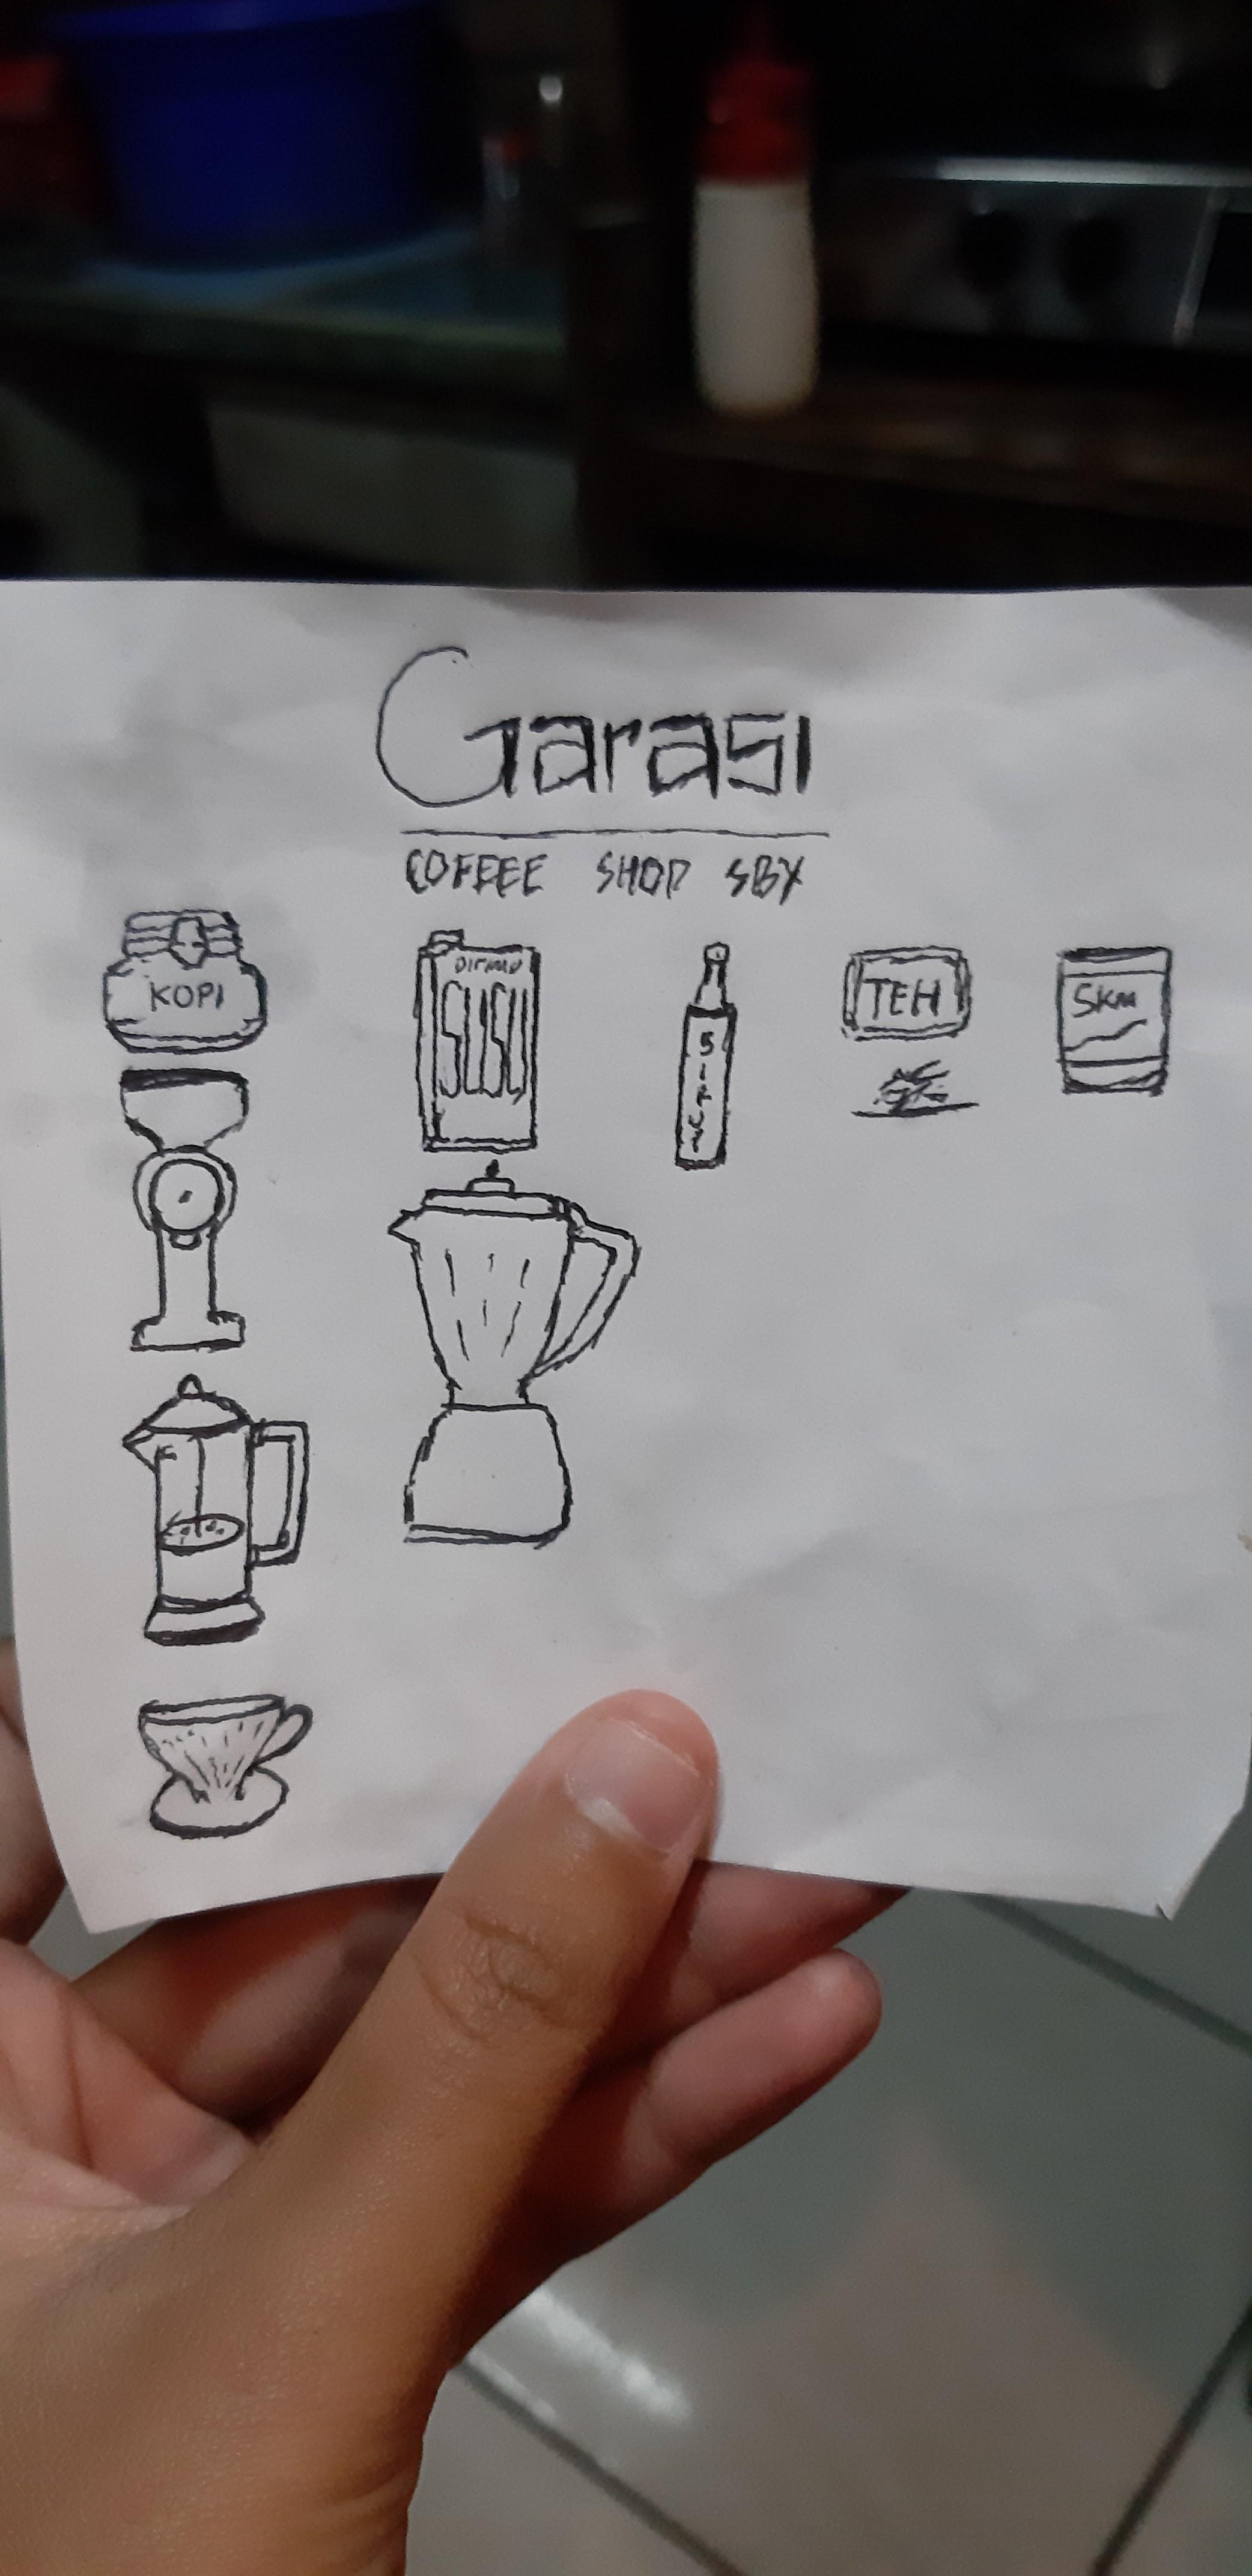 Garasi Coffee Shop review